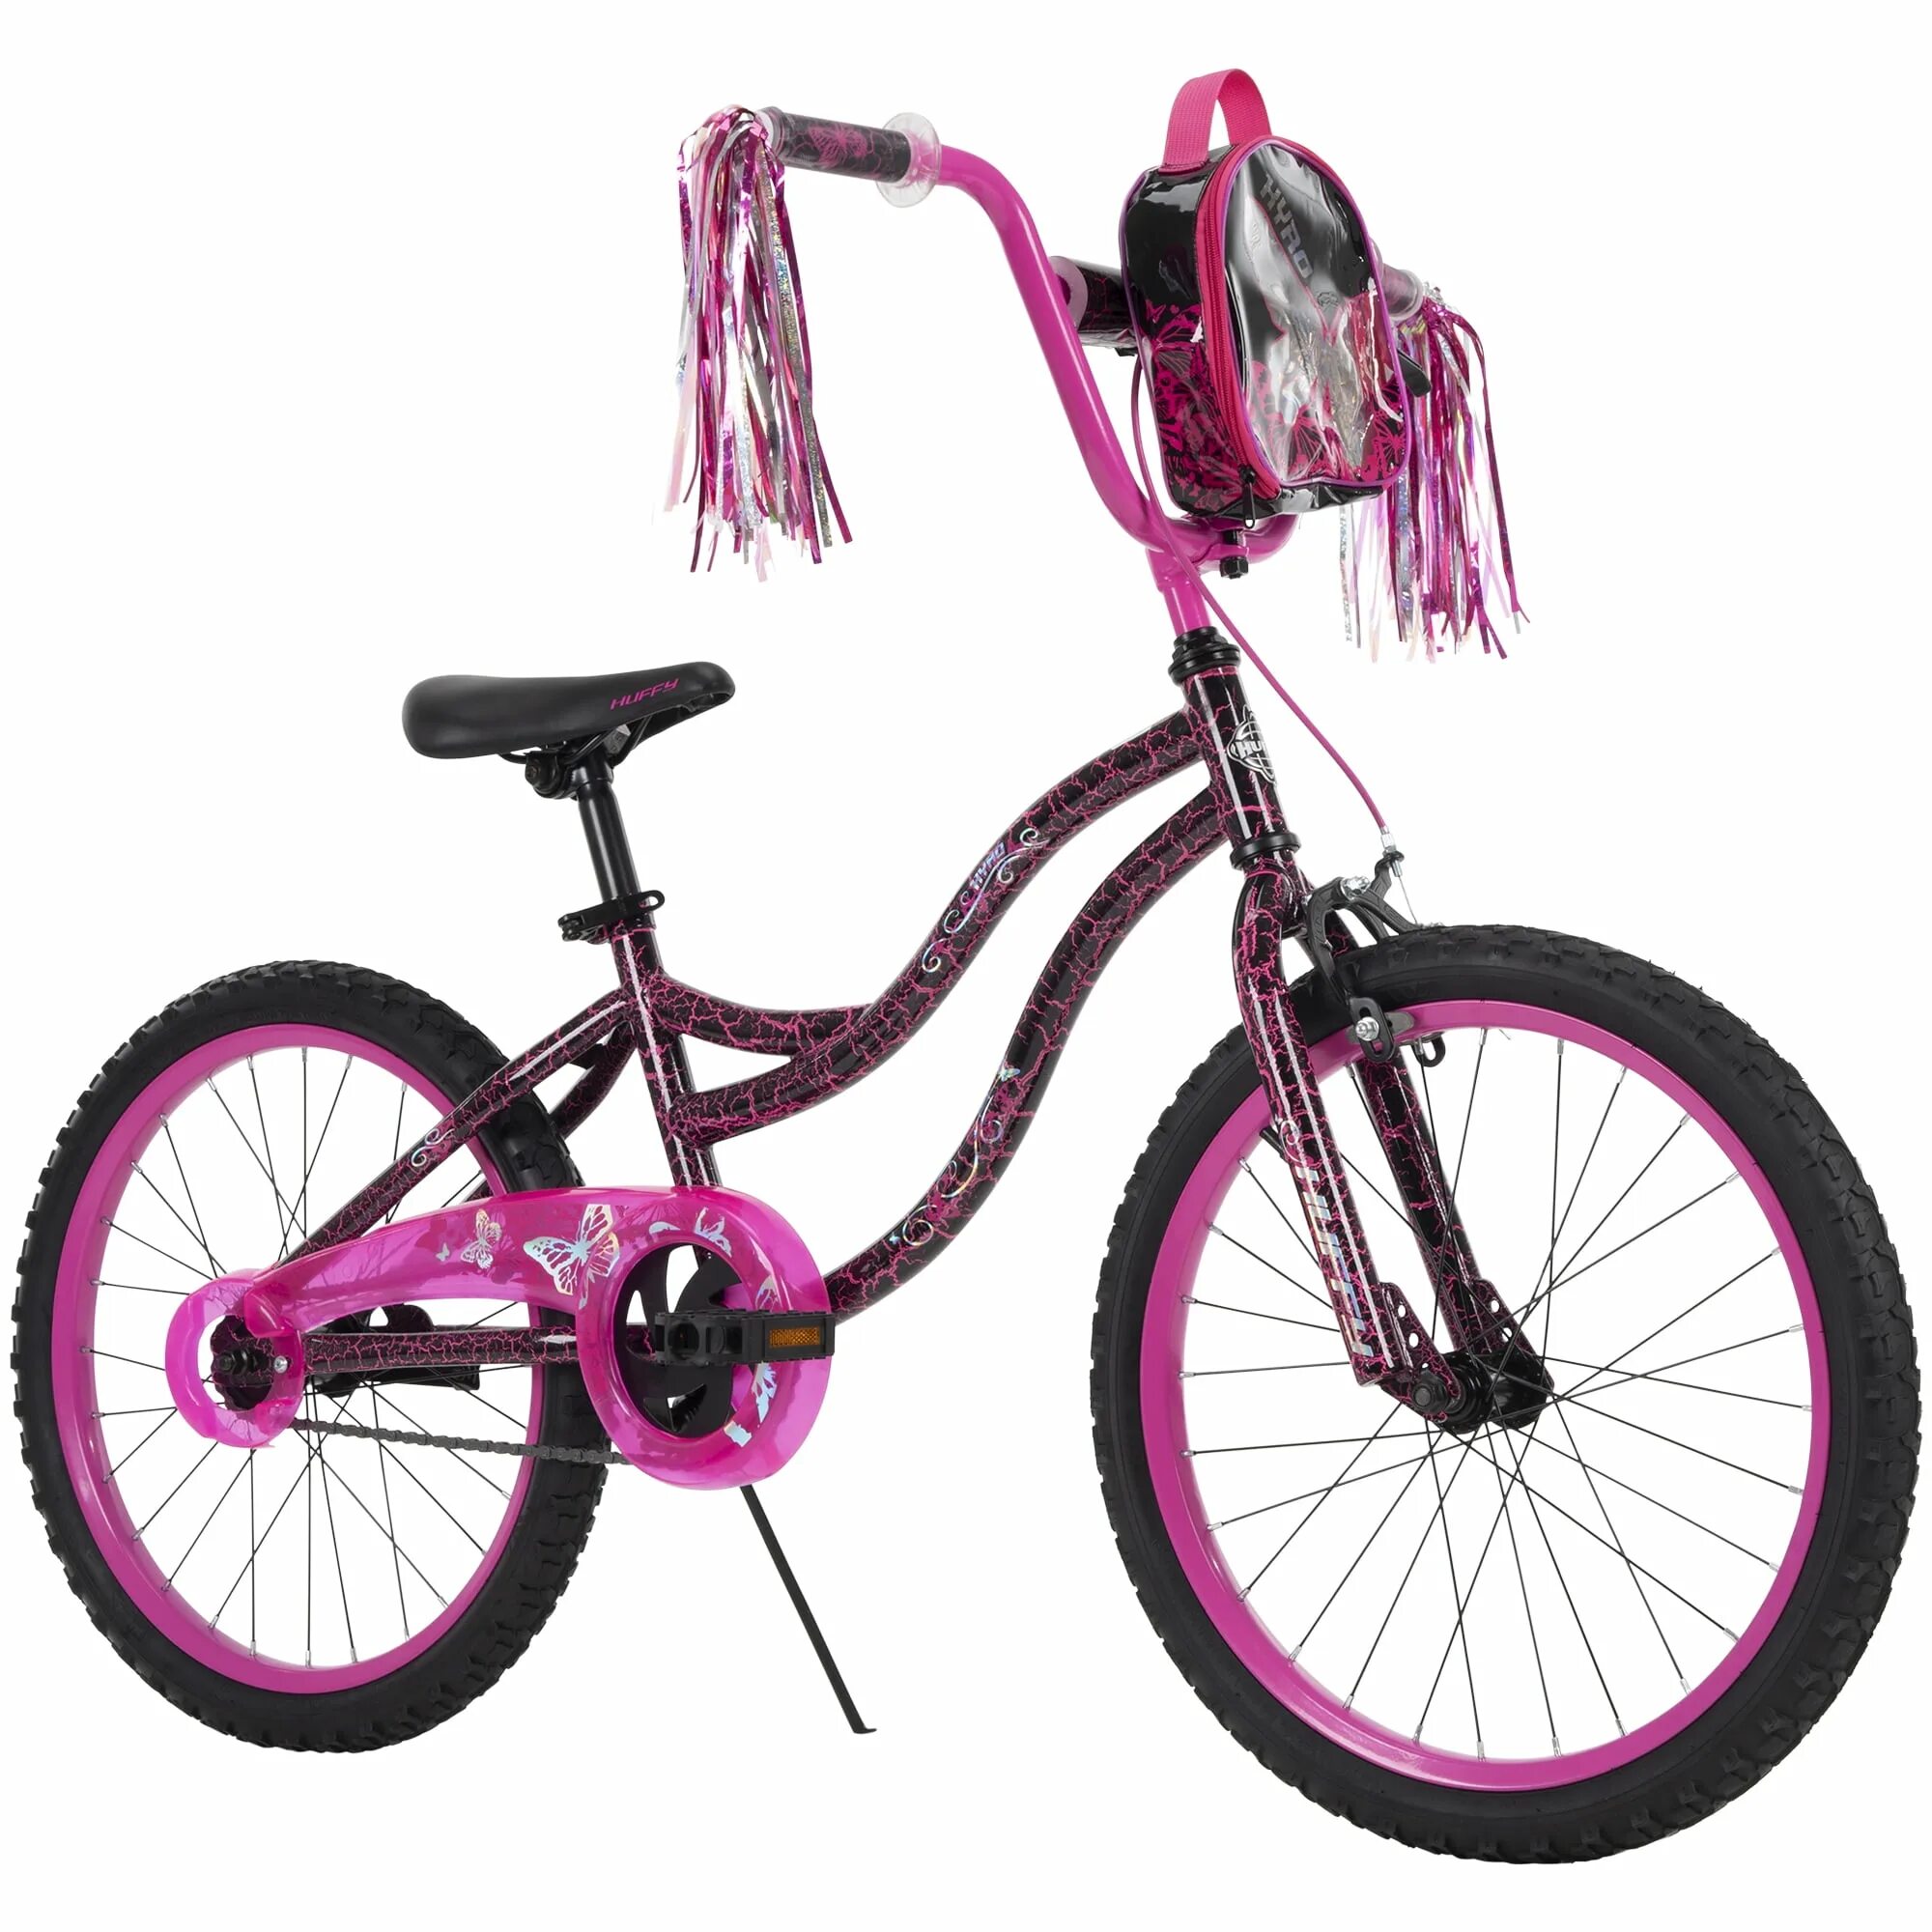 Huffy велосипеды. Детский велосипед Huffy Princess 16" Bike, белый/розовый. Huffy FIBRYYX. Велосипед 20 дюймов для девочки.